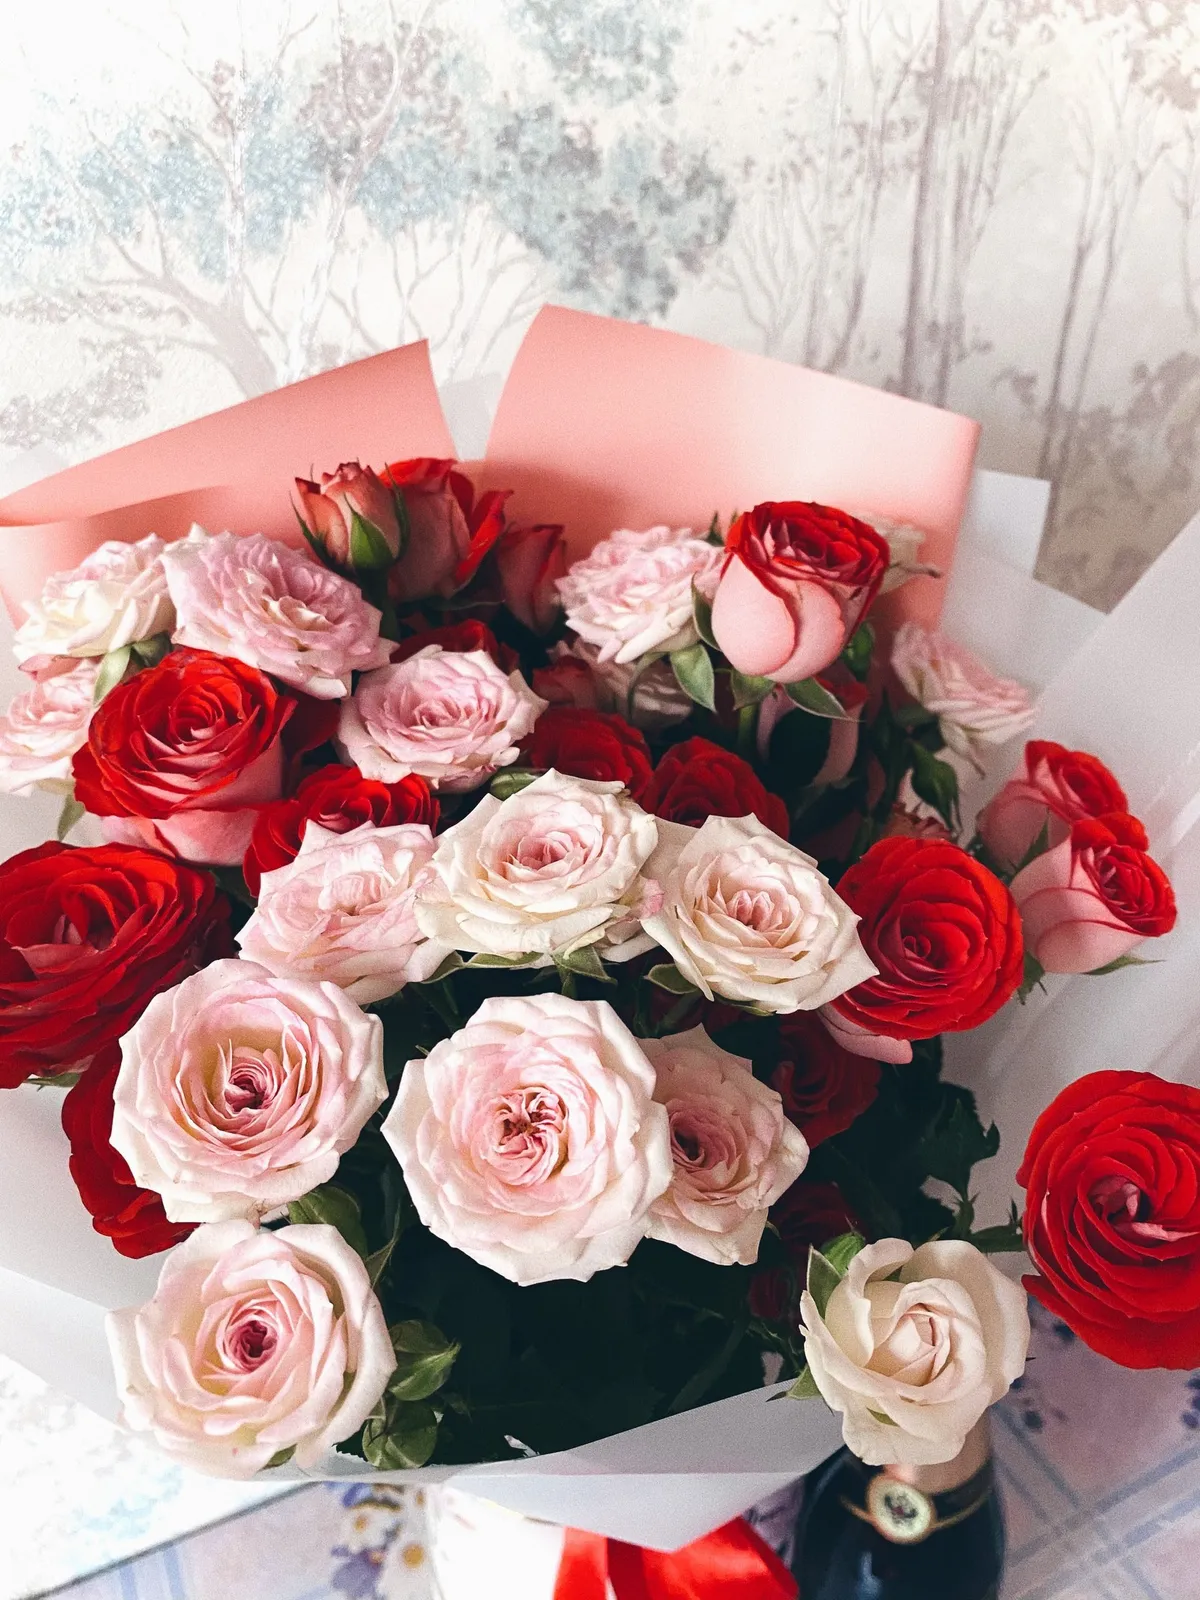 Bouquet de roses | Source : Unsplash